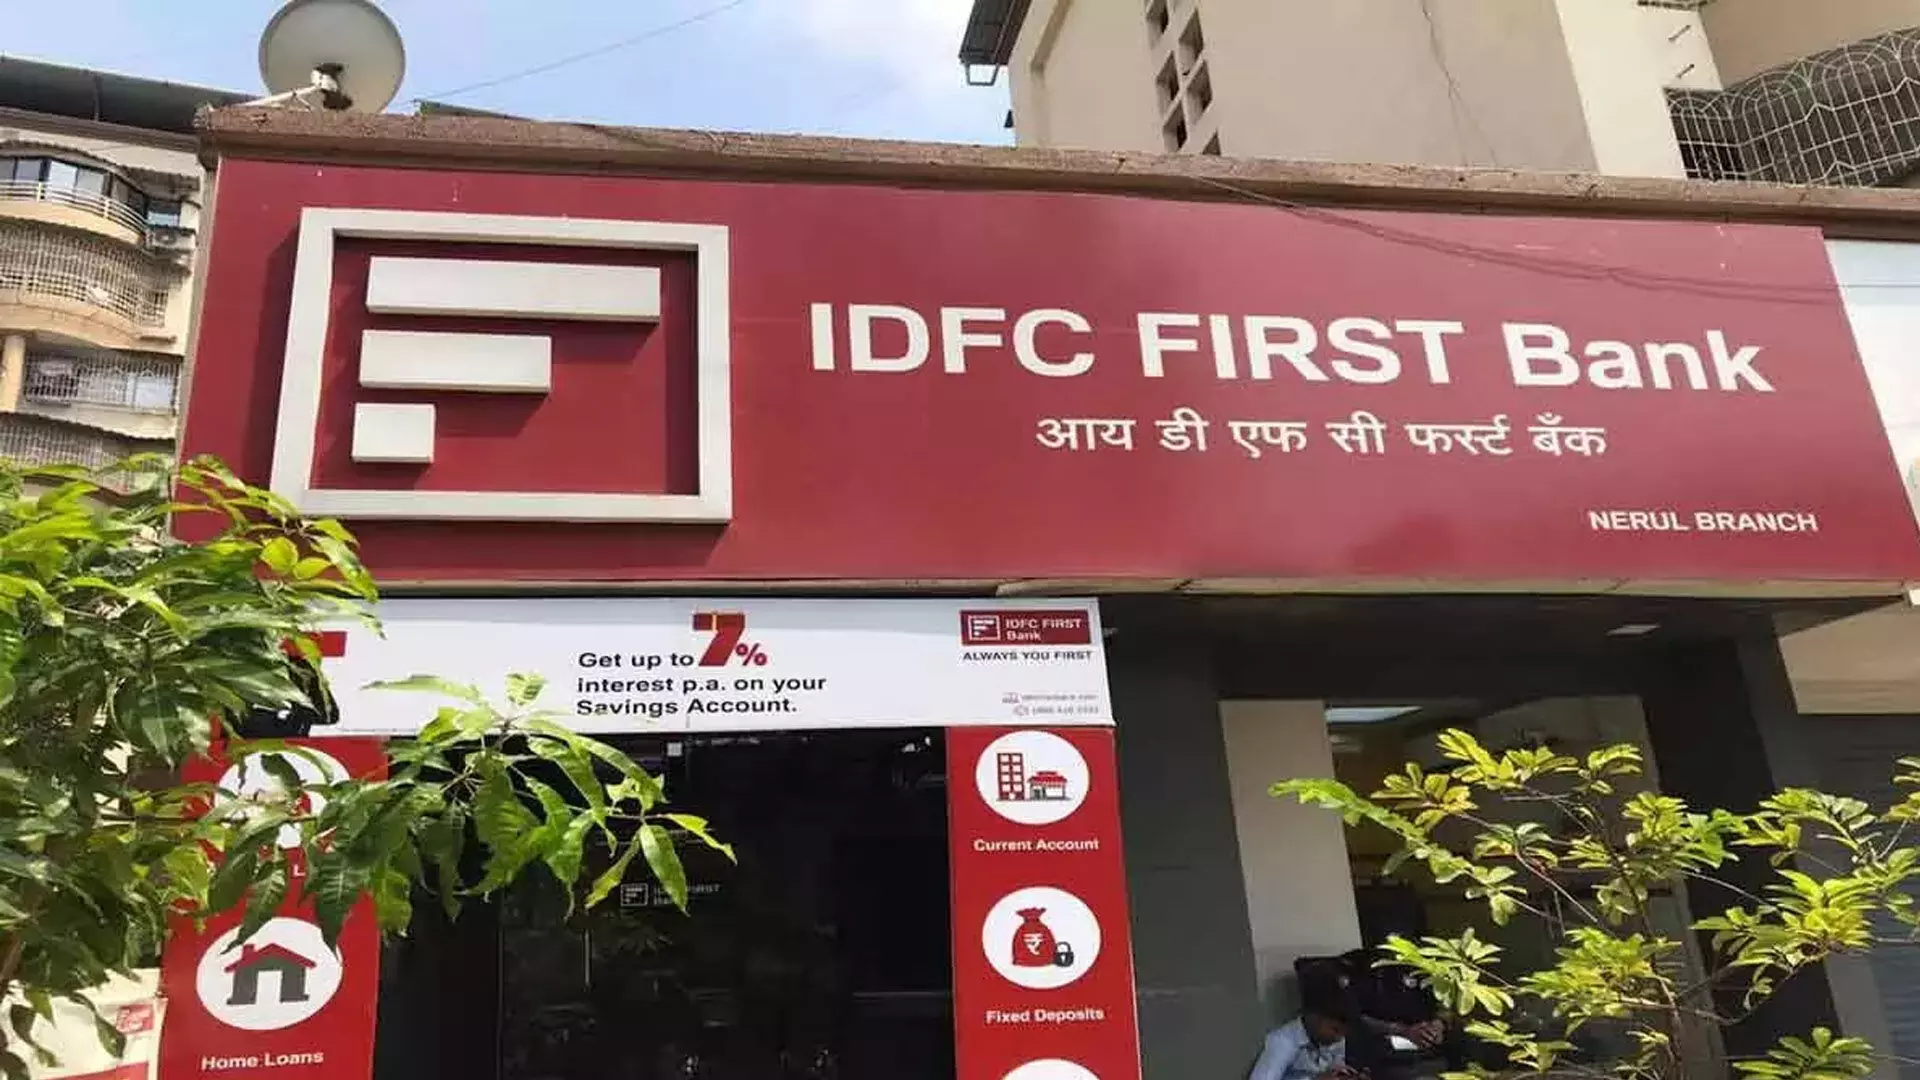 IDFC First Bank 3,200 करोड़ रुपये जुटाने की बना रहा योजना